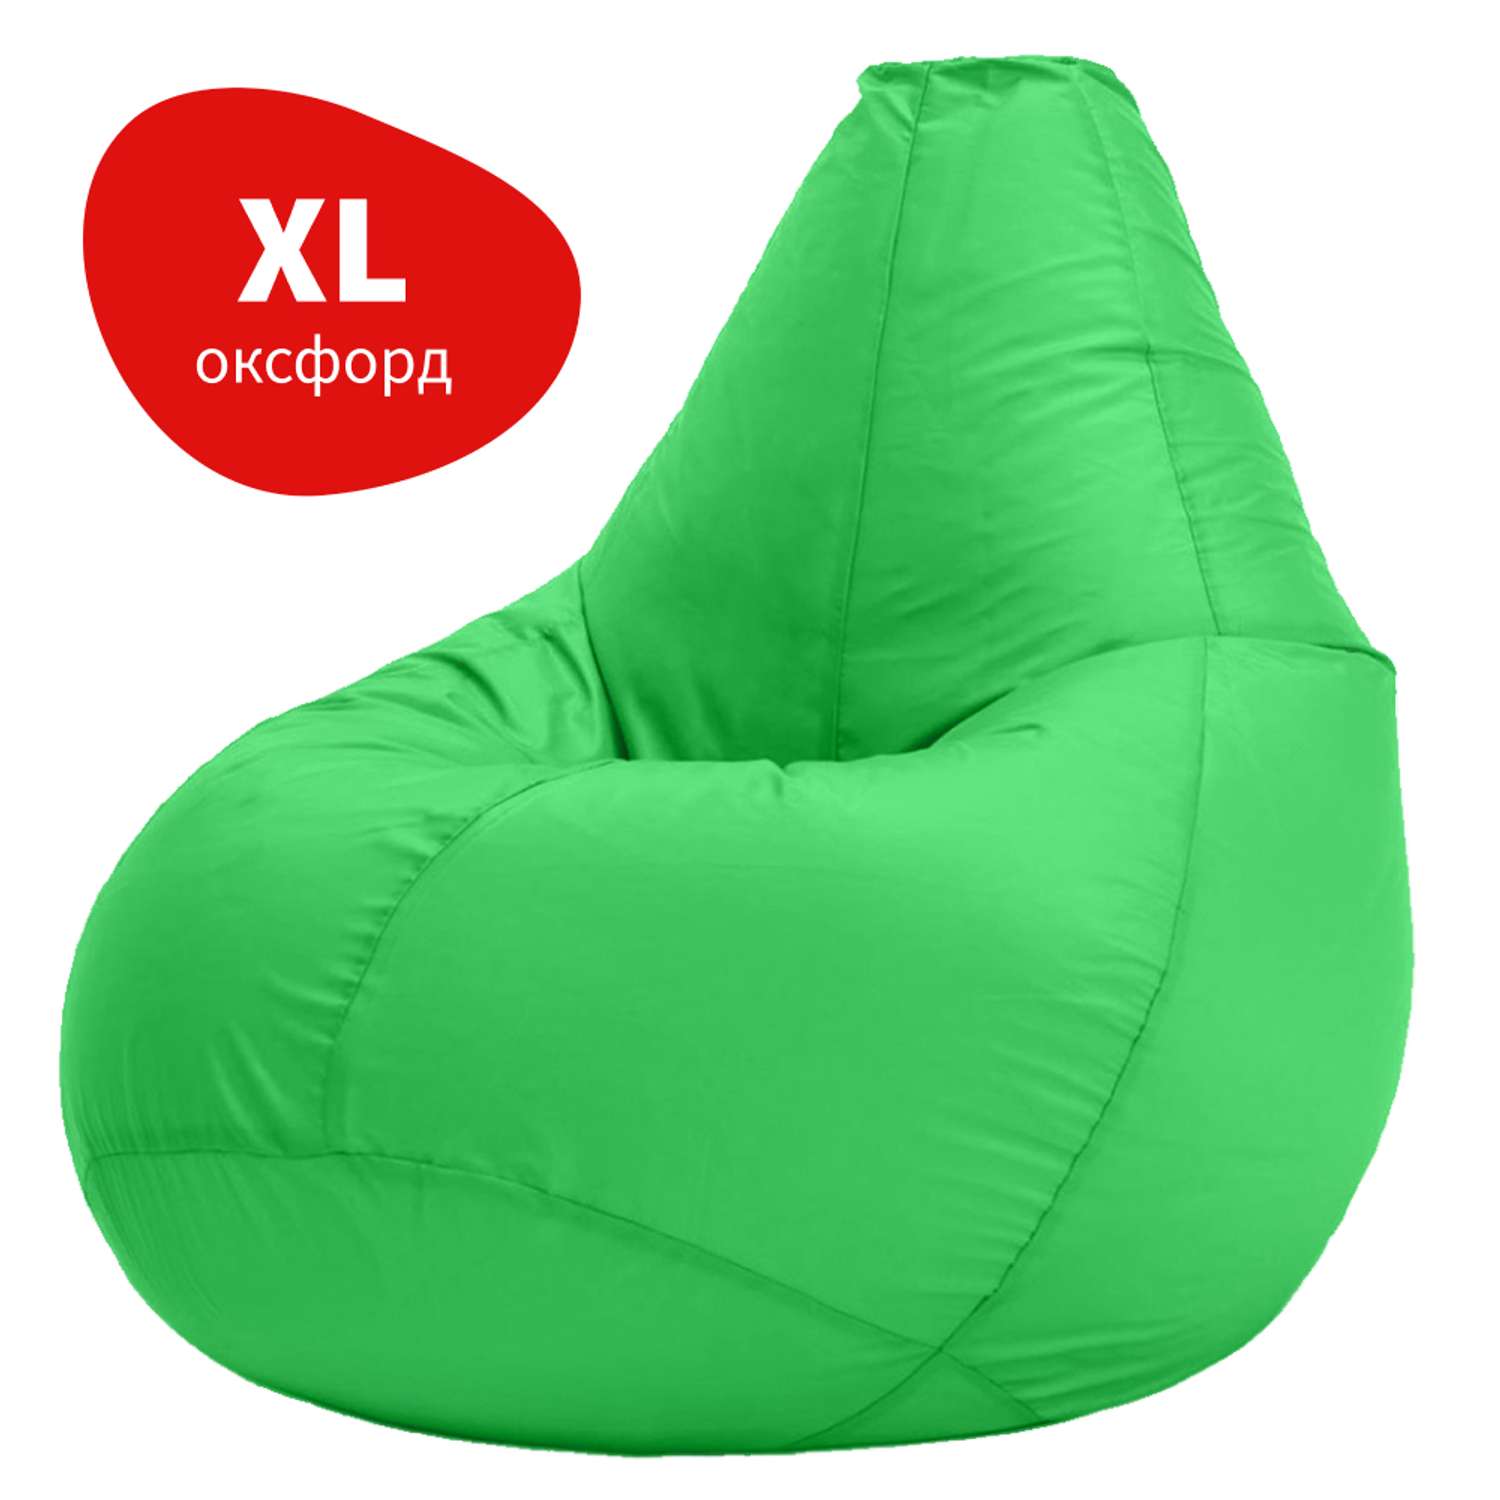 Кресло-мешок груша Bean Joy размер XL оксфорд - фото 1